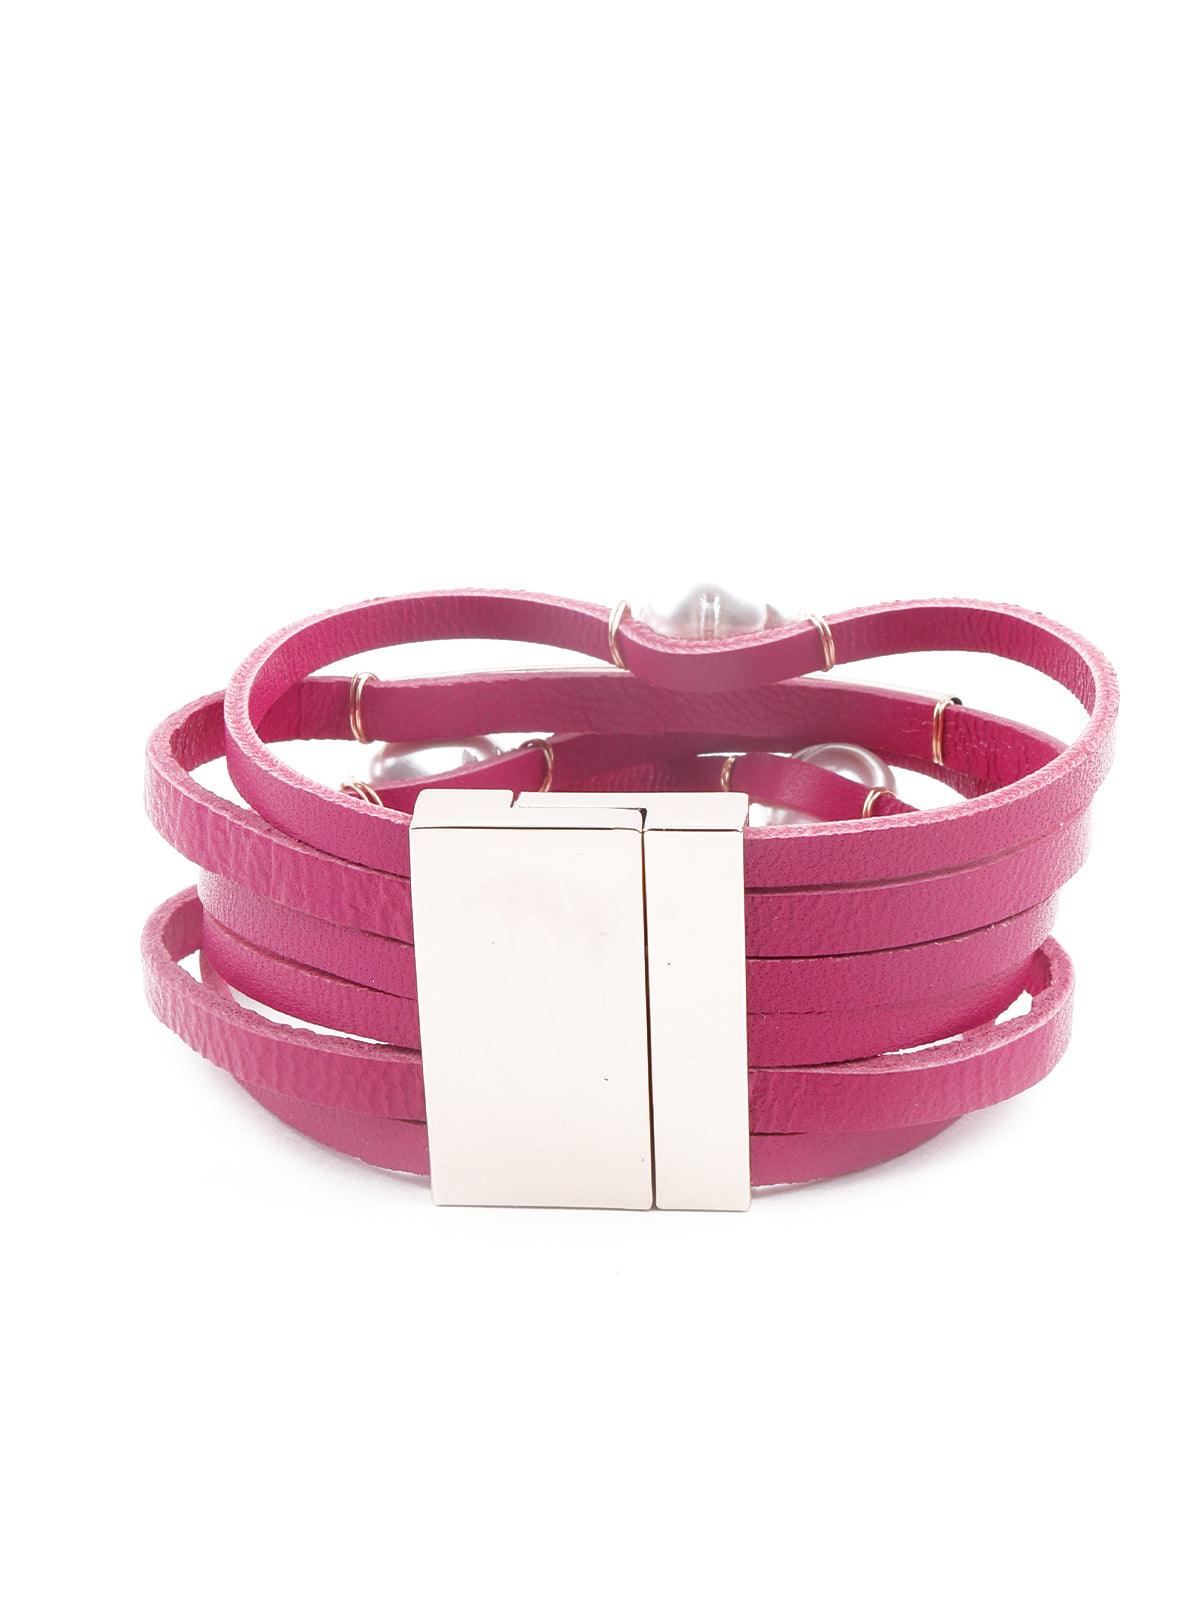 Women's Exquisite Pink Layered Embellished Bracelet - Odette